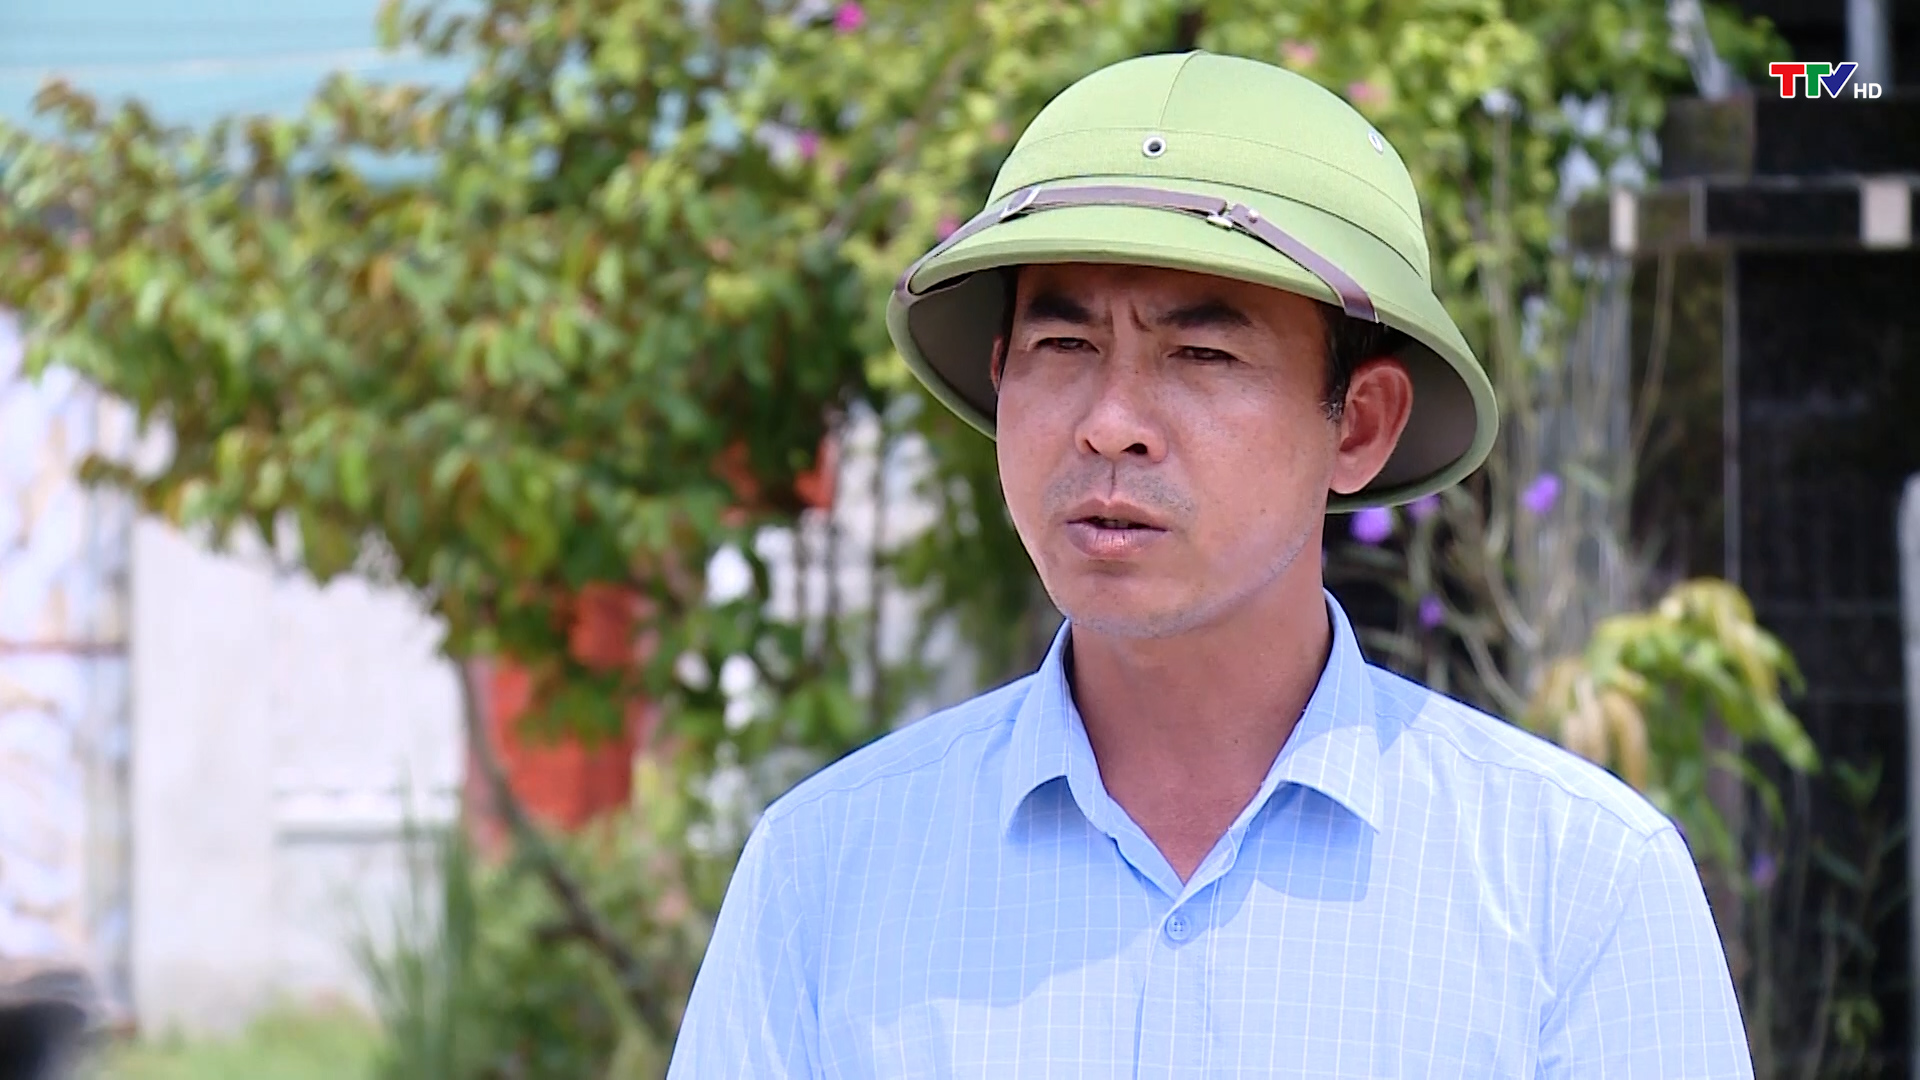 Huyện Yên Định đẩy nhanh tiến độ hỗ trợ xây dựng nhà ở cho đồng bào sinh sống trên sông - Ảnh 2.